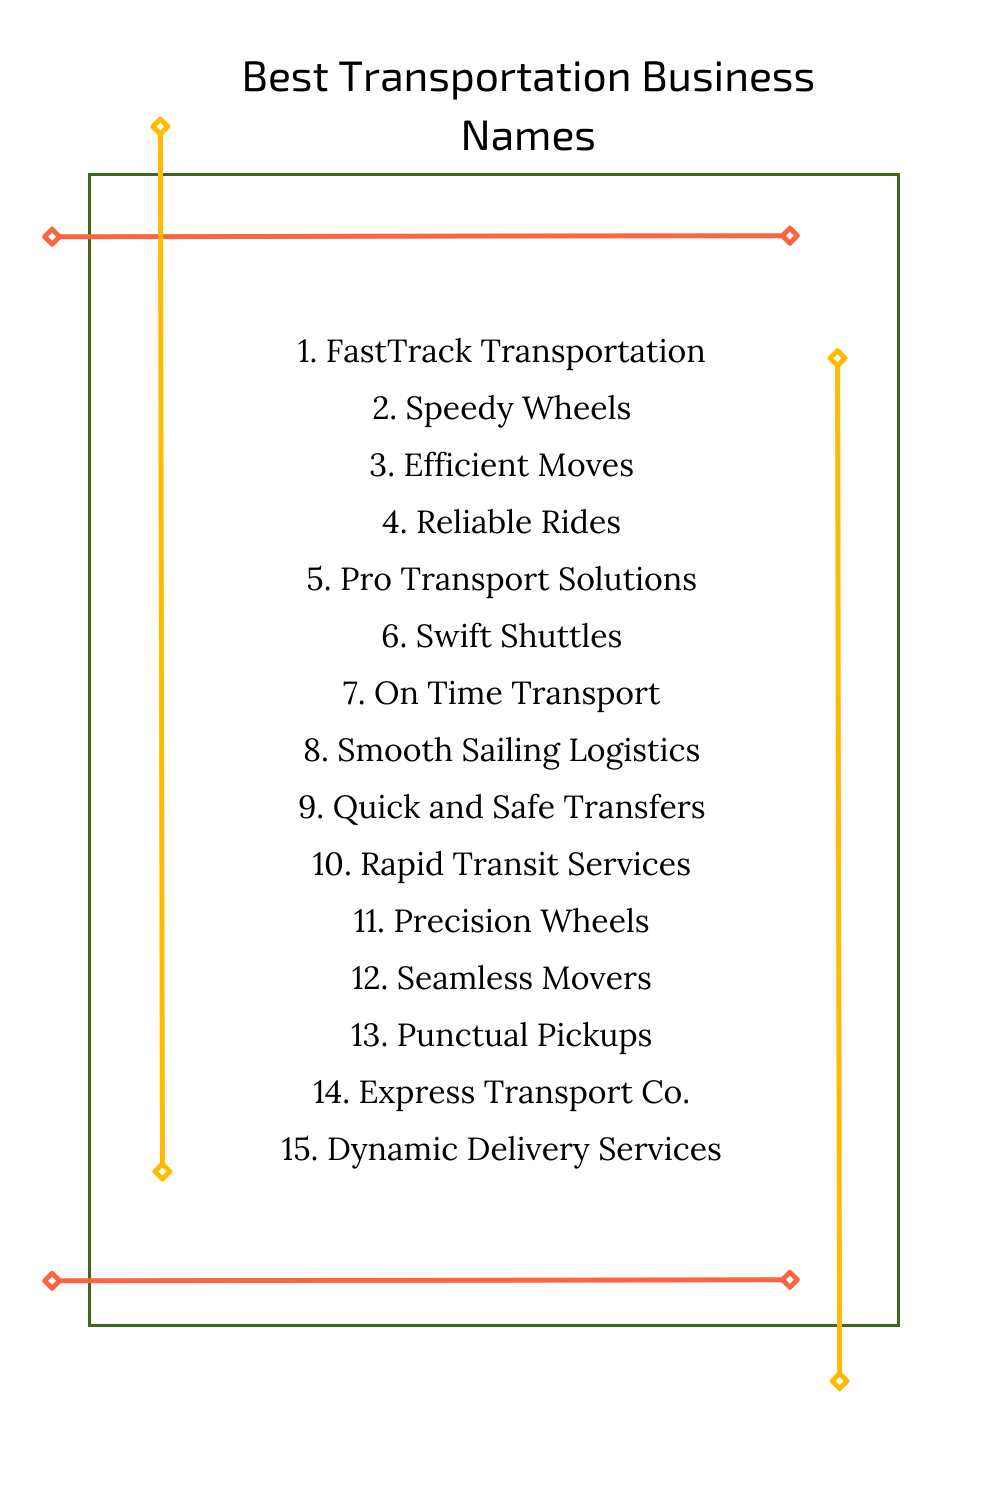 Best Transportation Business Names